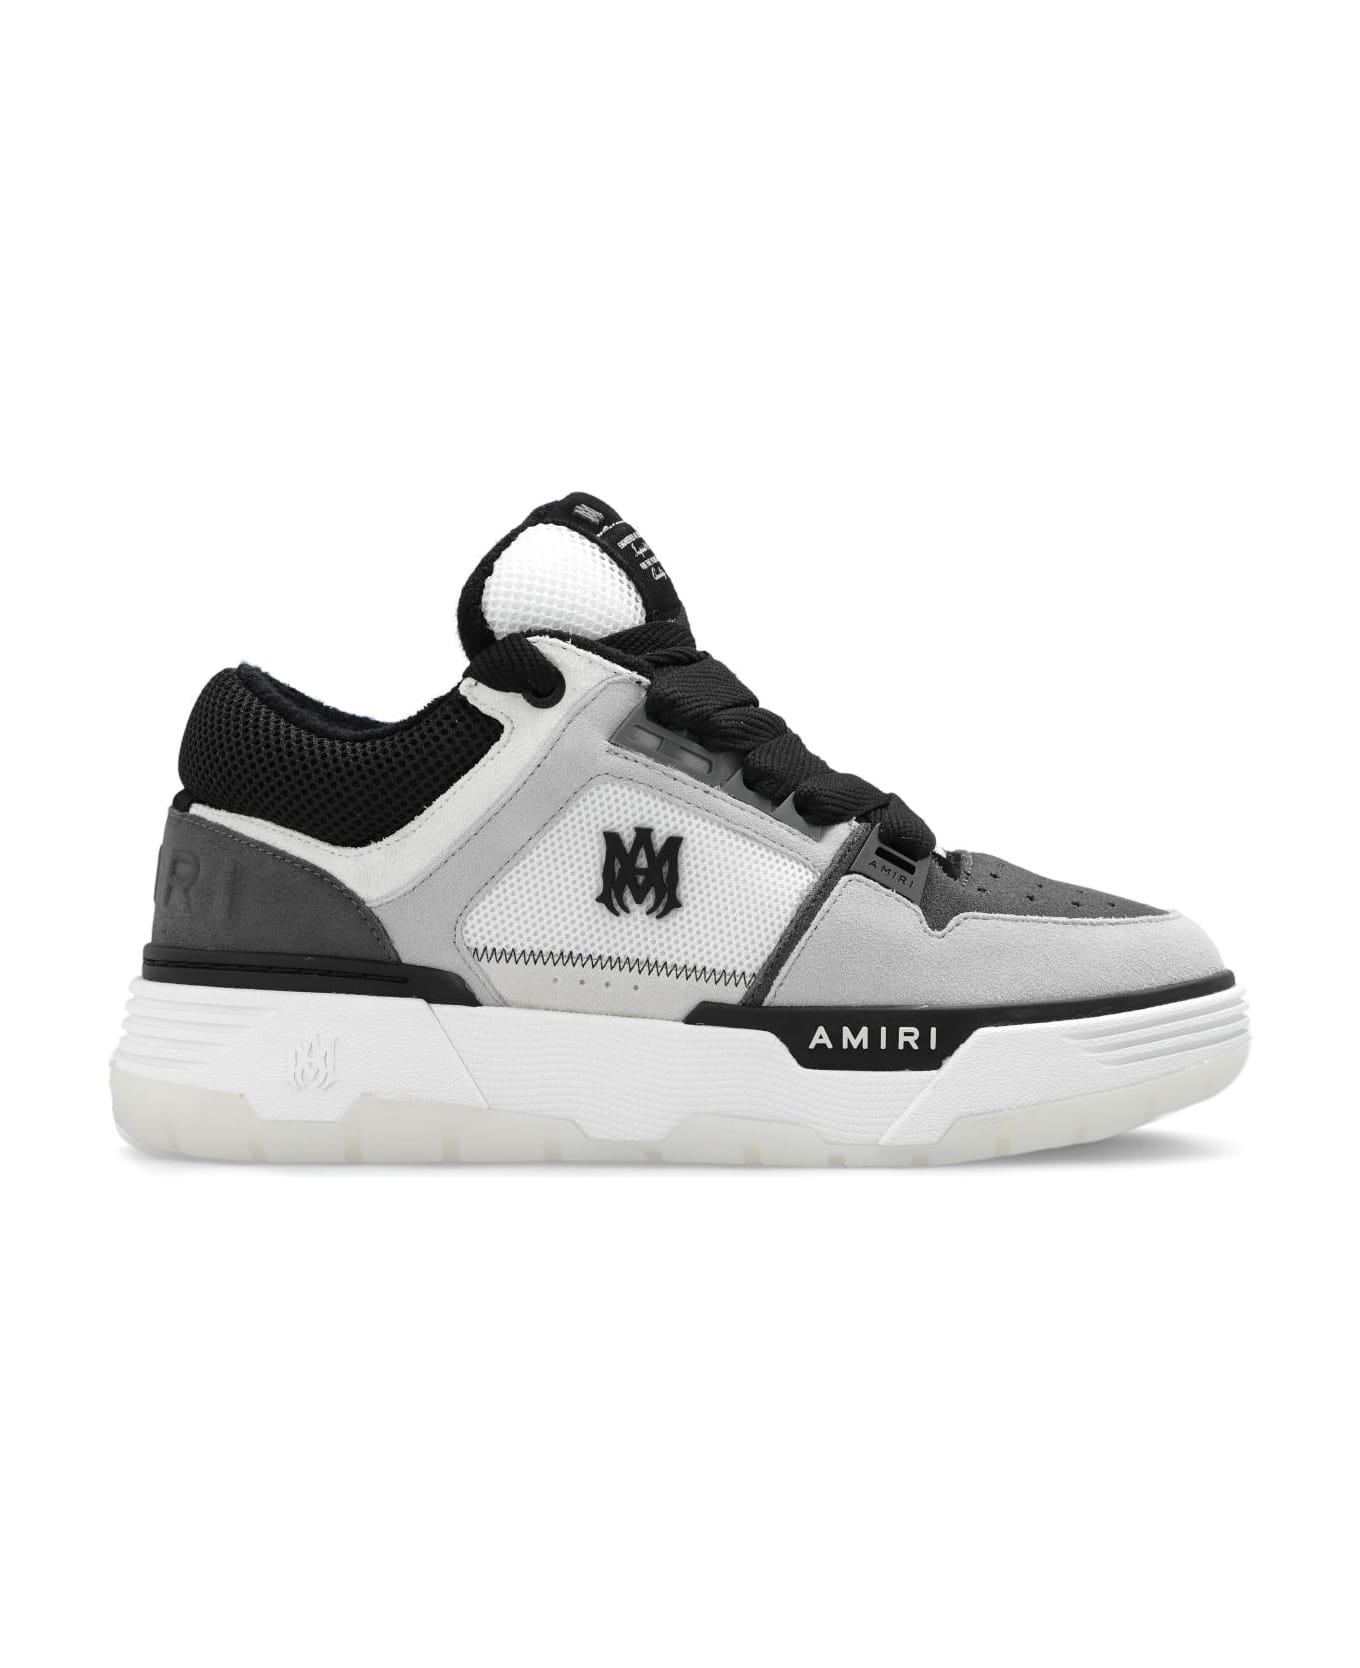 AMIRI 'ma-1' Sneakers - Black